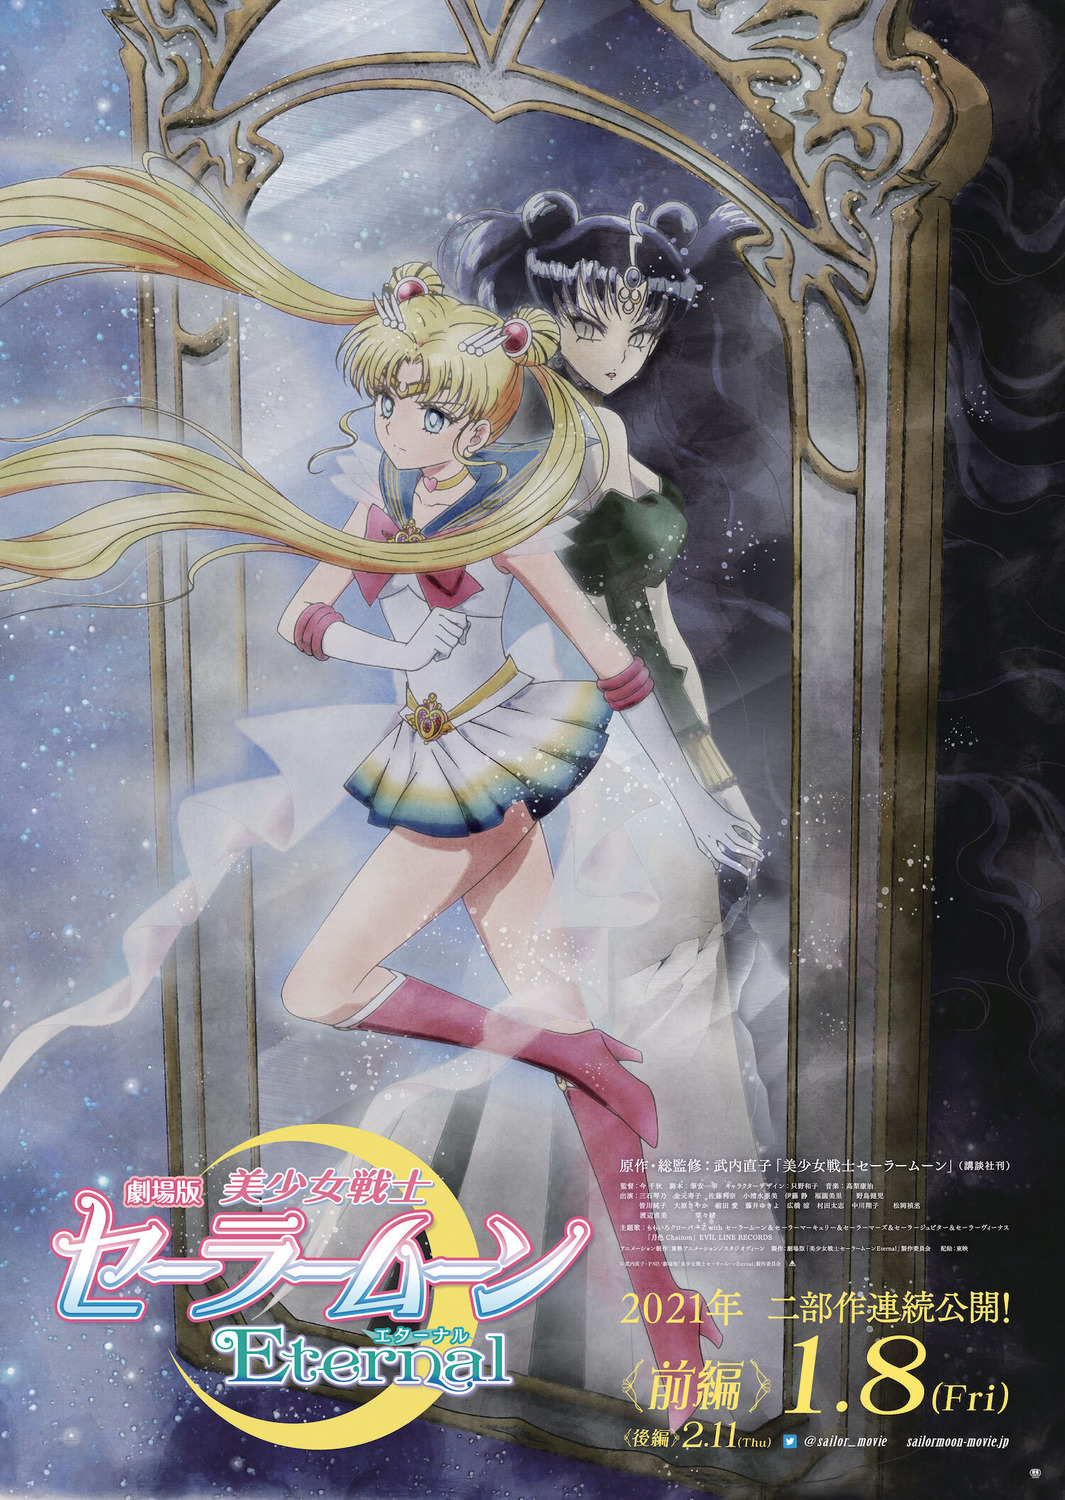 Extra Large Movie Poster Image for Gekijouban Bishoujo Senshi Sailor Moon Eternal (#4 of 4)